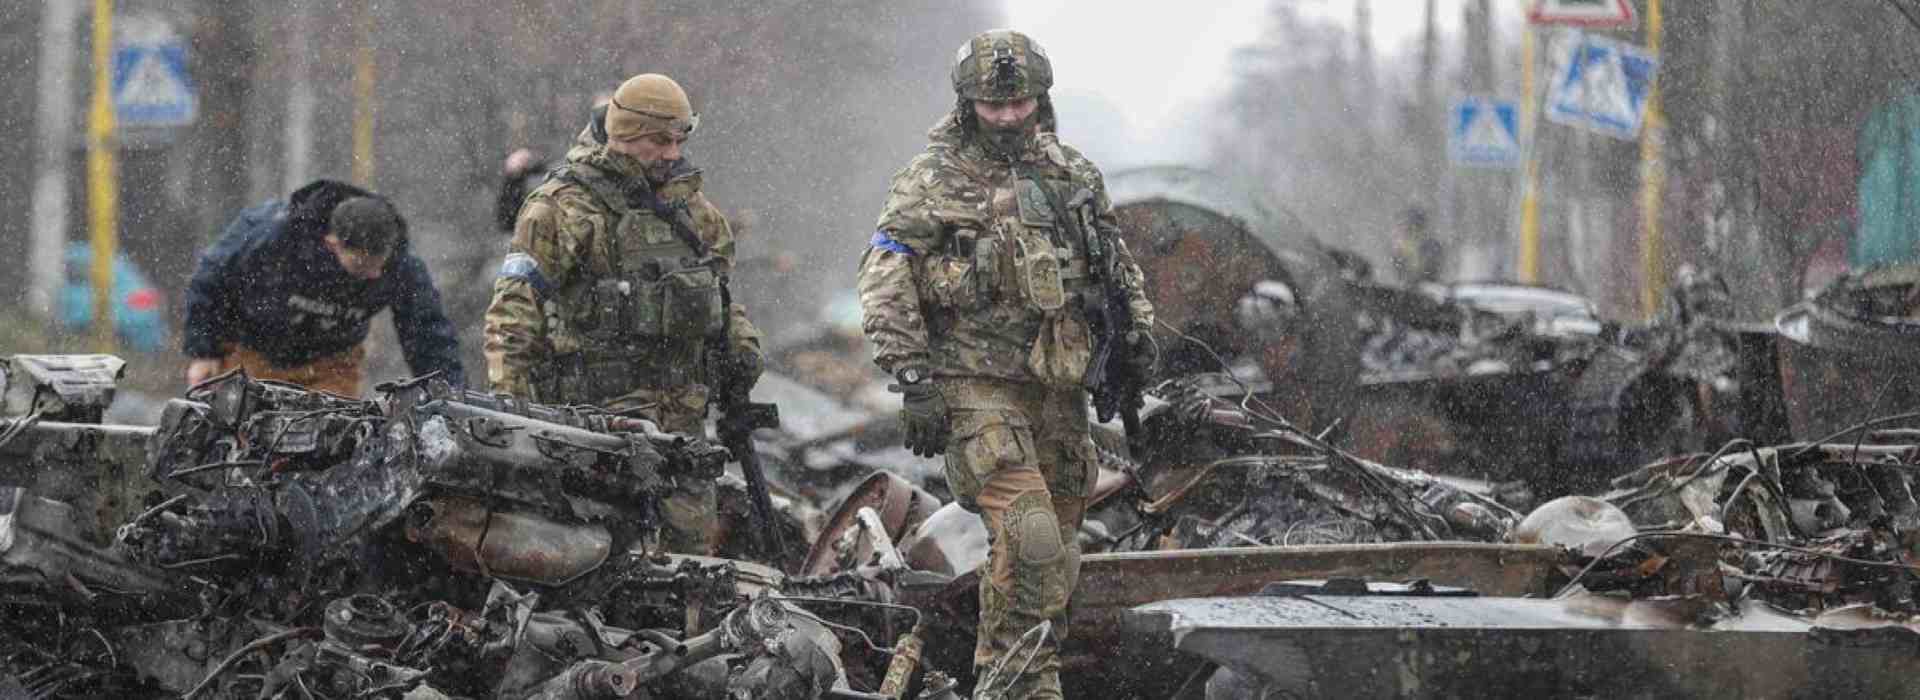 Onu: "Denunce di stupri commessi da soldati ucraini"